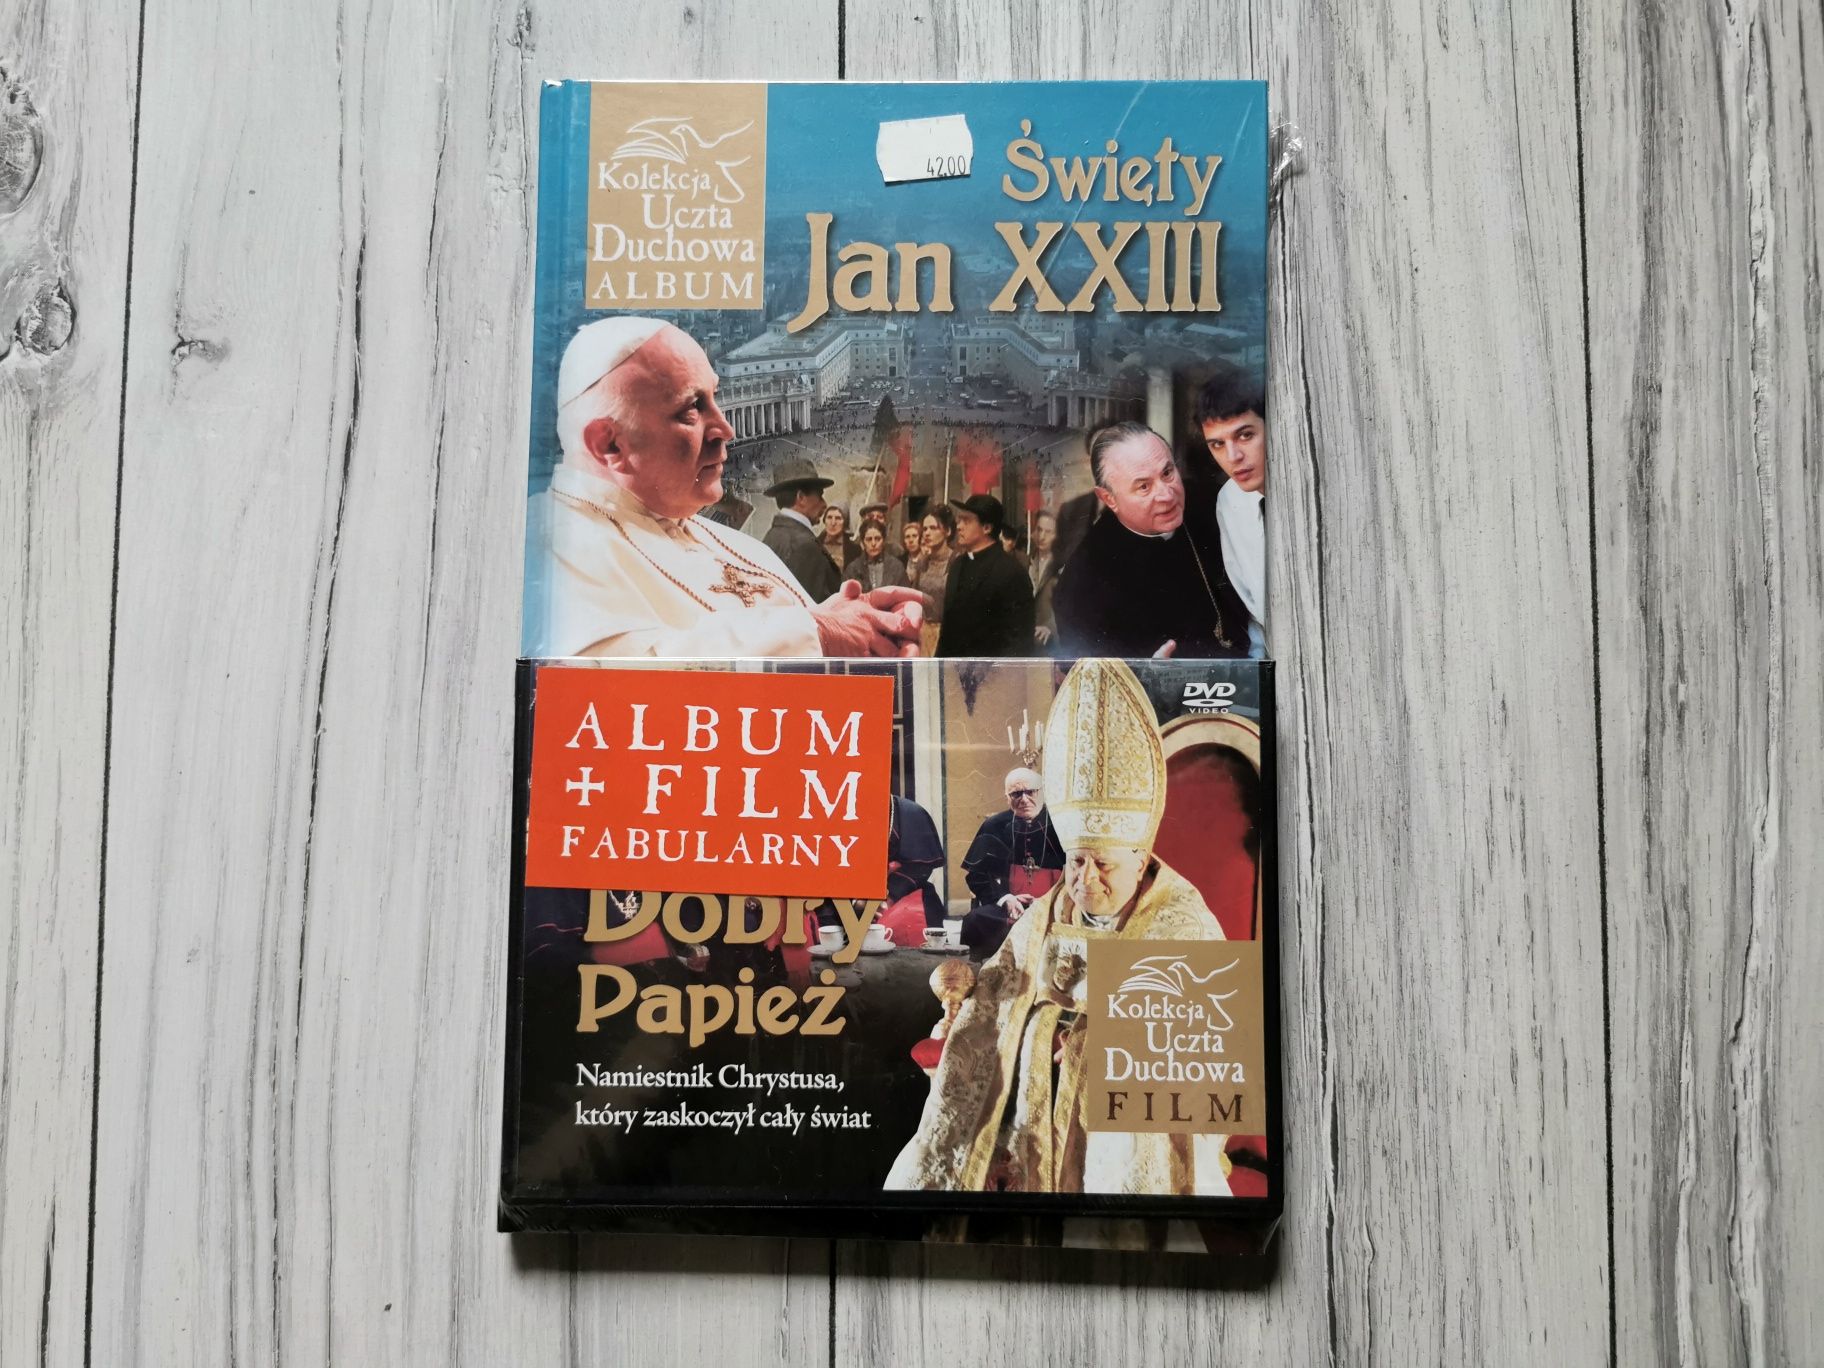 Święty Jan XXIII - kolekcja uczta duchowa Album +Film NOWA!